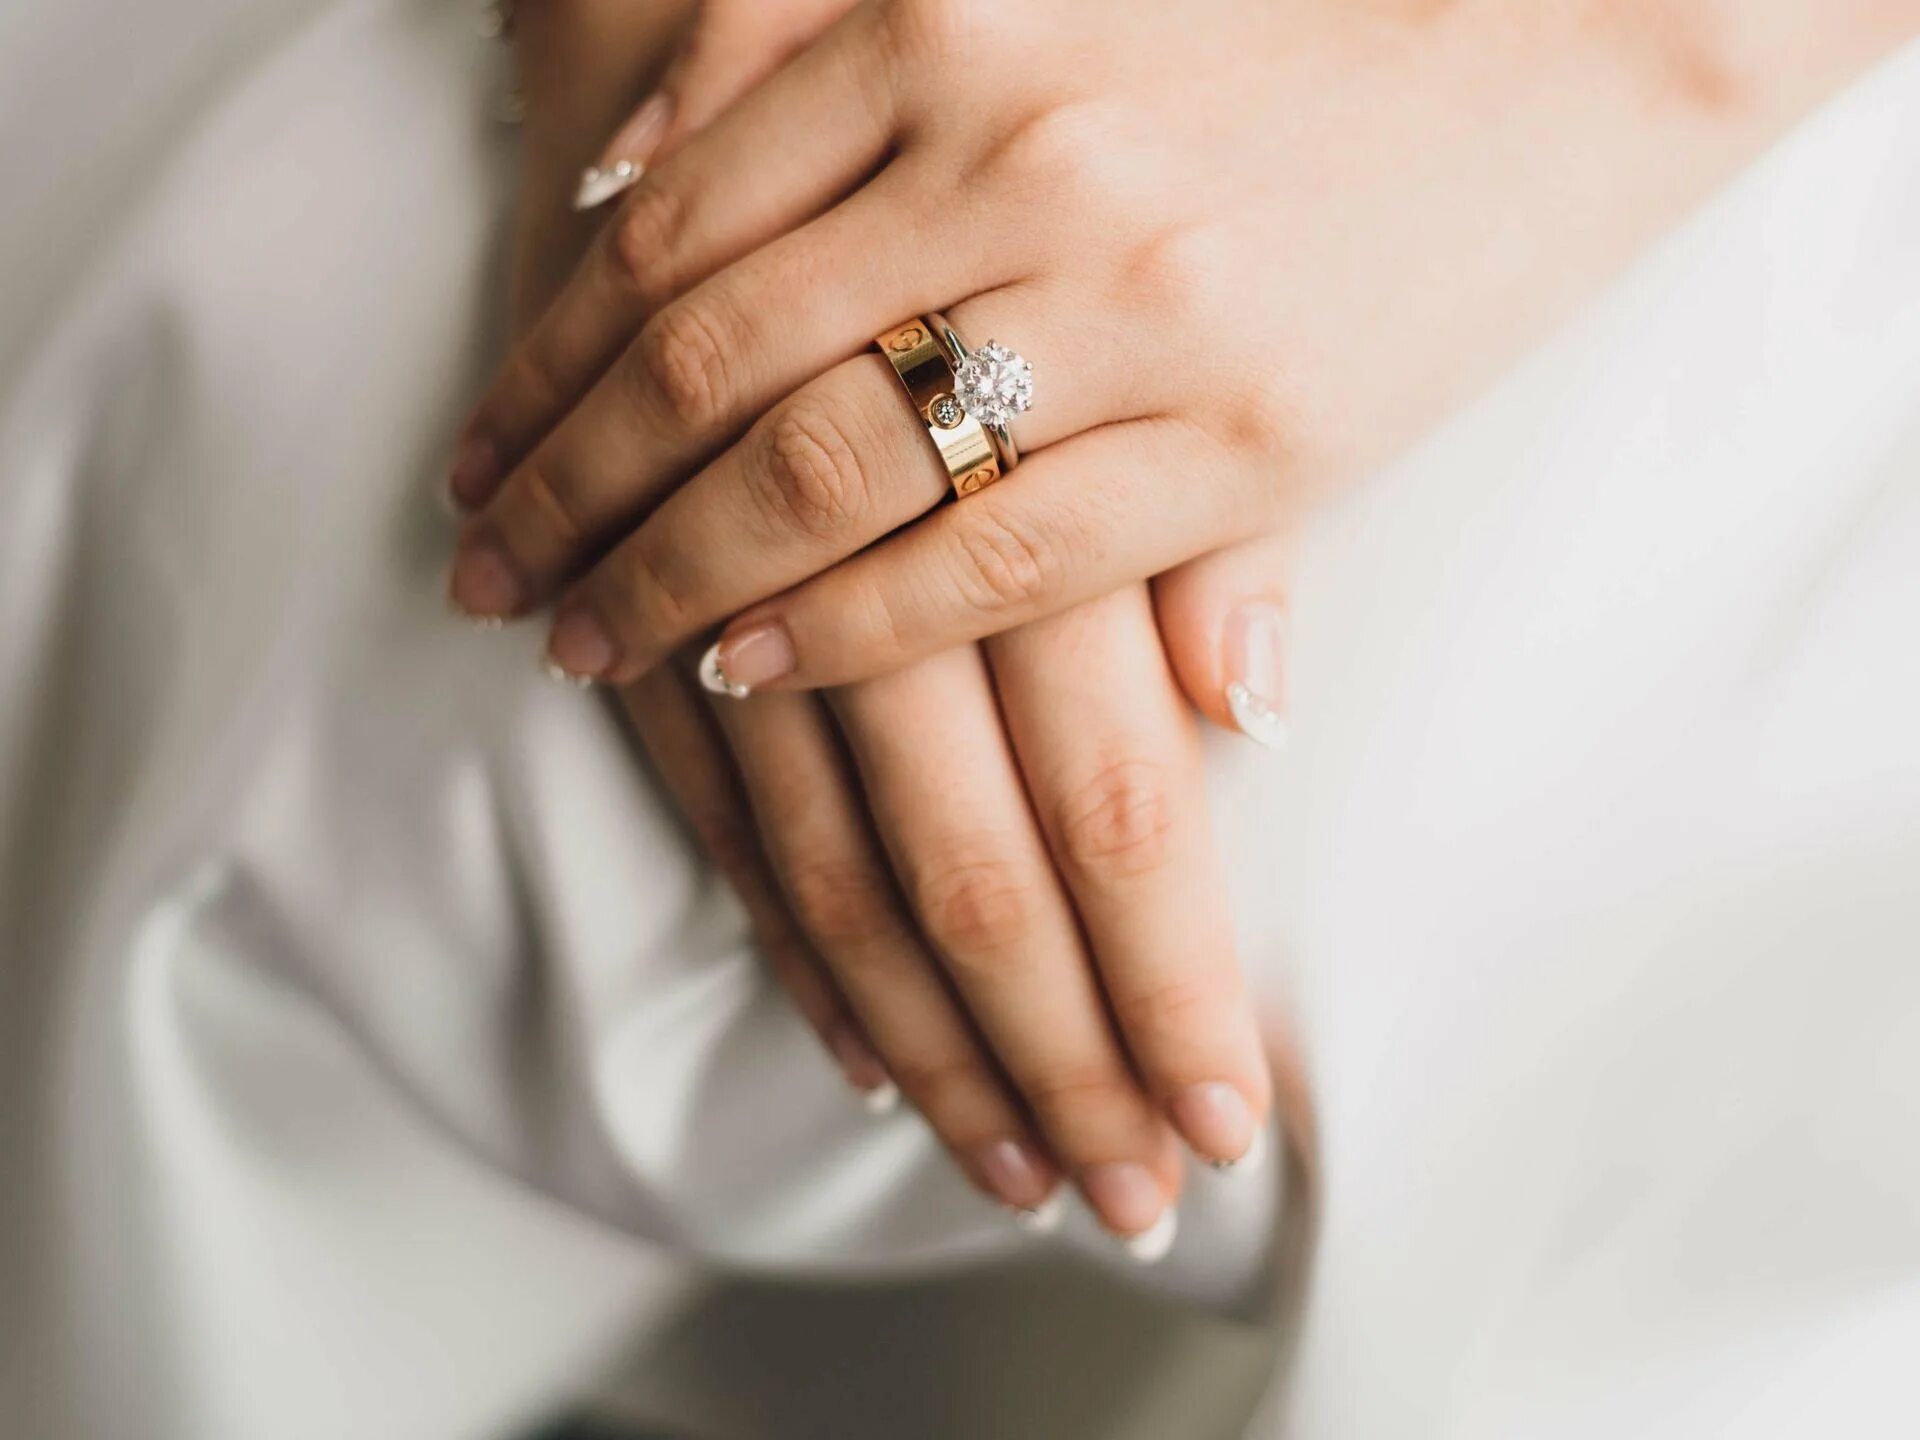 "Обручальное кольцо" Глаголева. Обручальные и помолвочные кольца. Обручальные кольца на руках. Кольцо на руке.